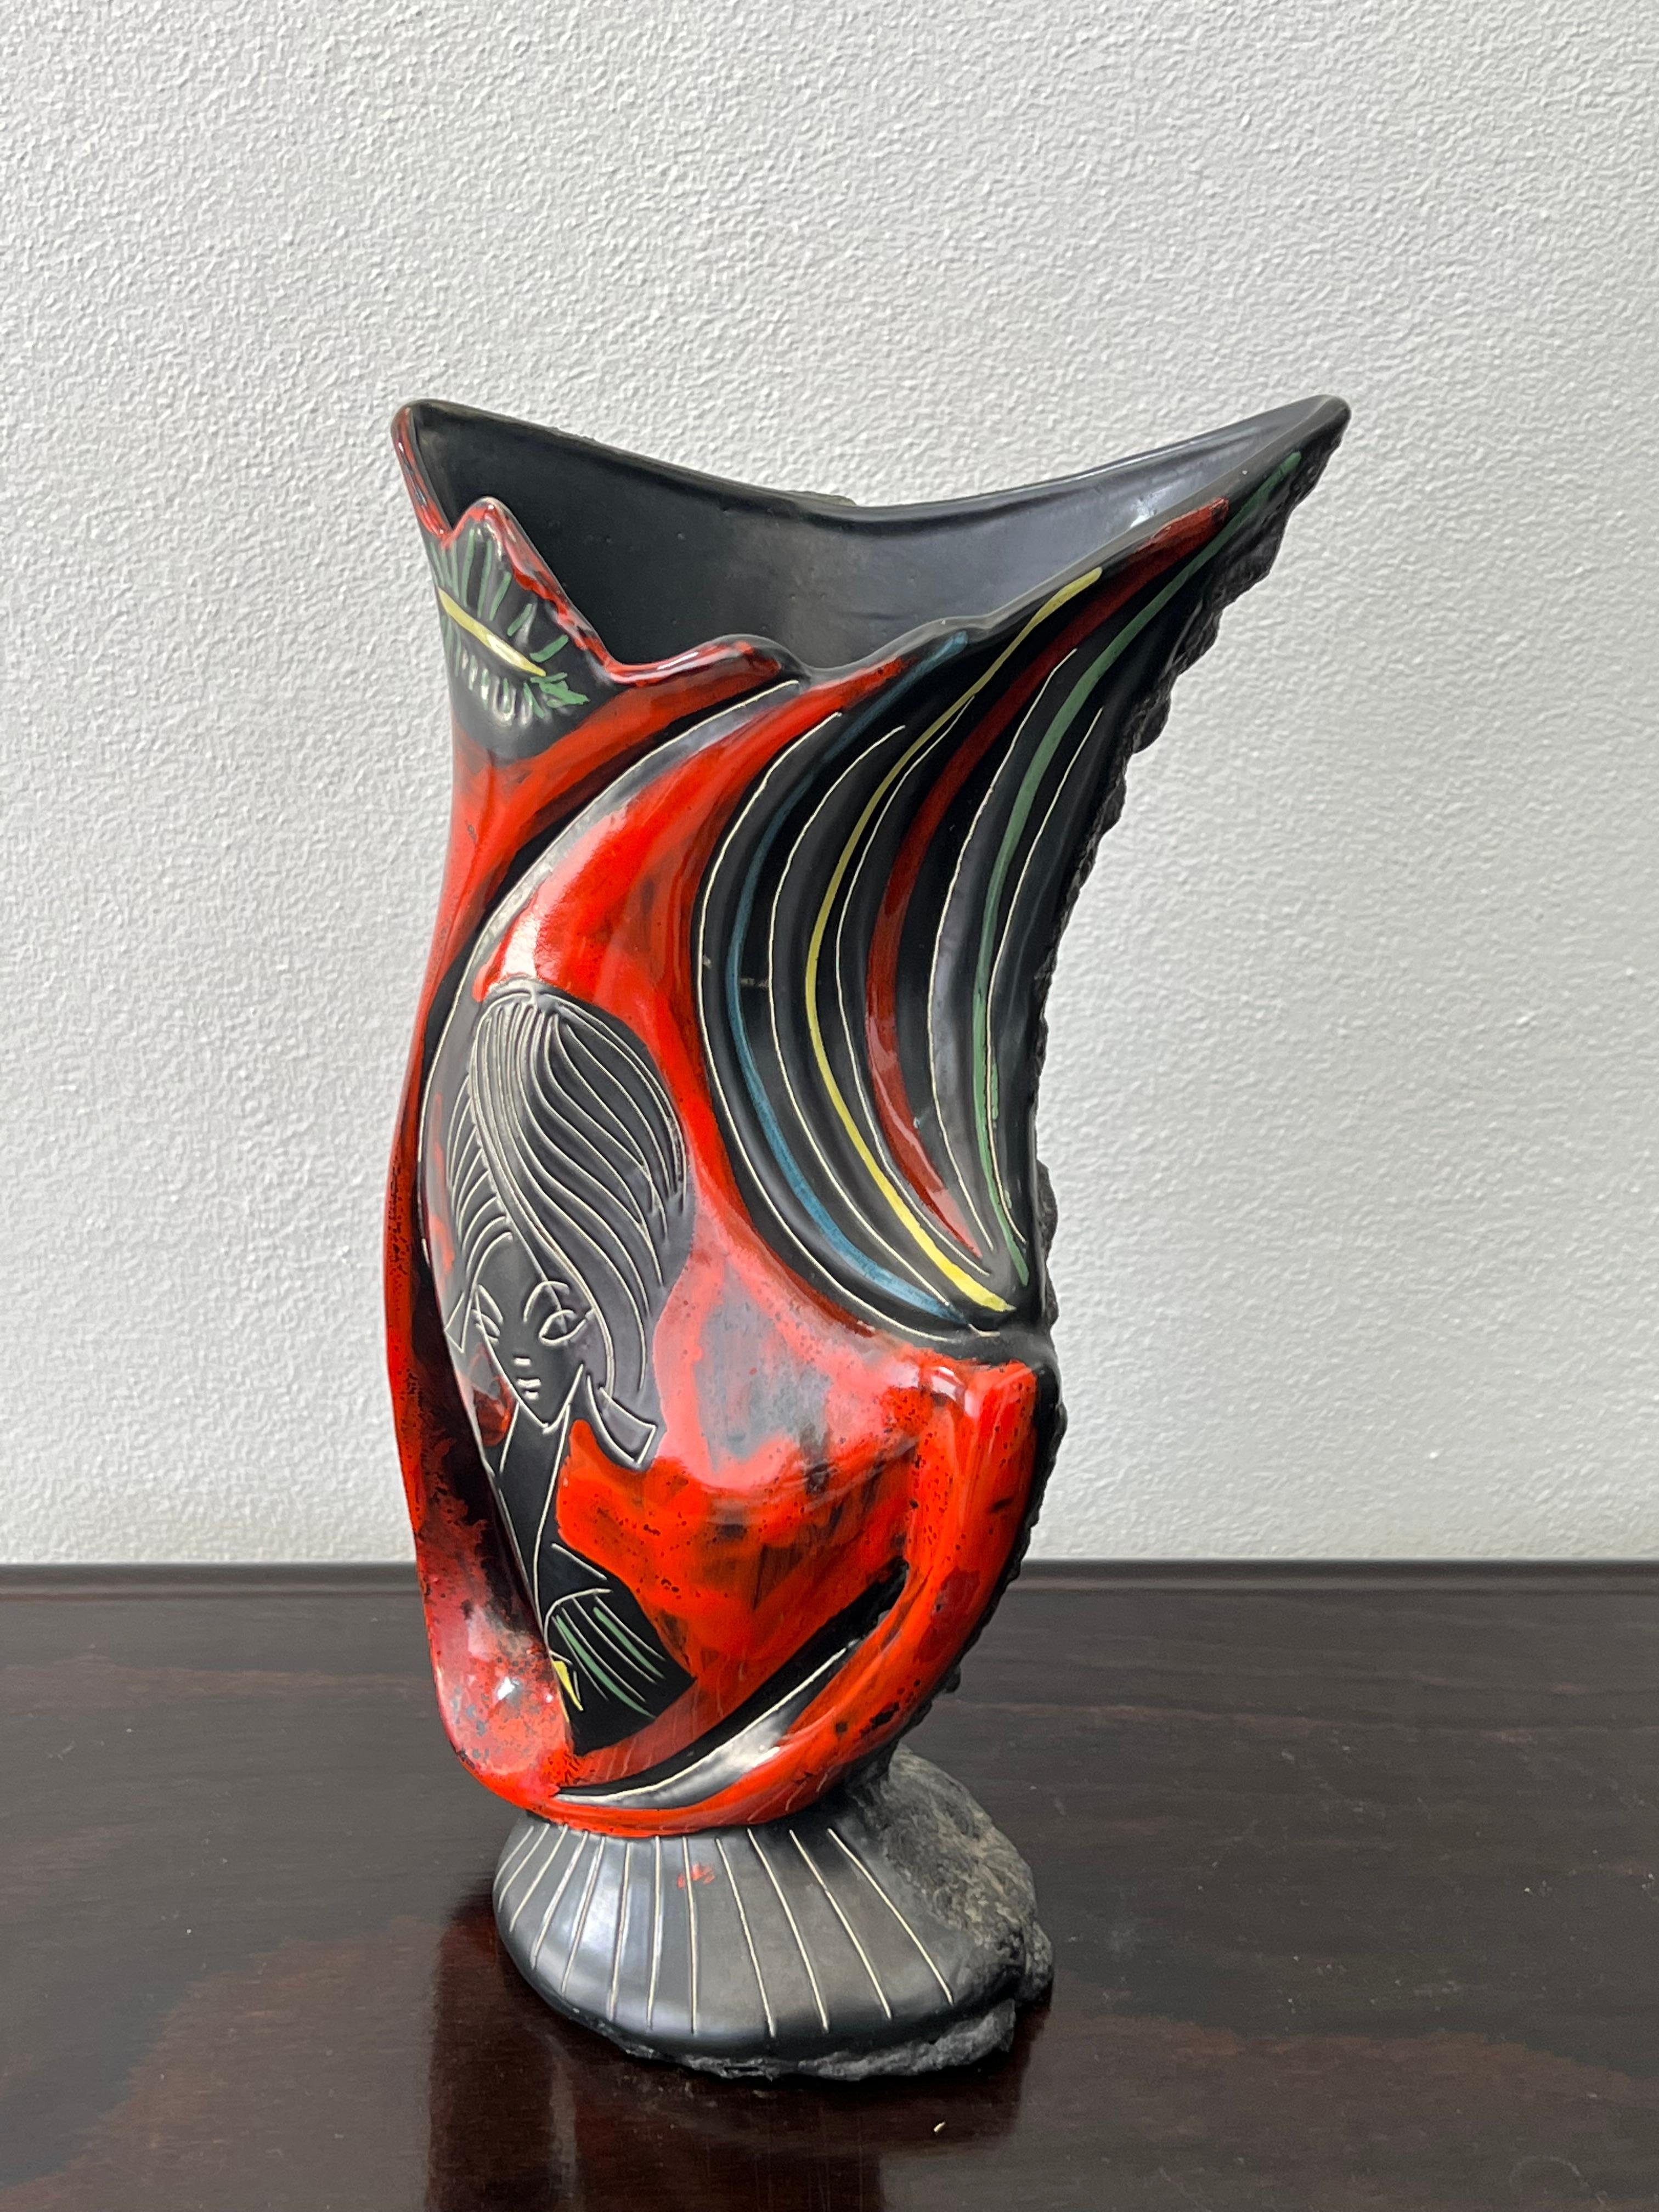 Superbe vase italien Augusto Giulianelli pour San-Marino Lava 1950. Vase signé M6 Giulianelli, une face est en céramique émaillée, l'autre en céramique avec un étonnant travail de lave.